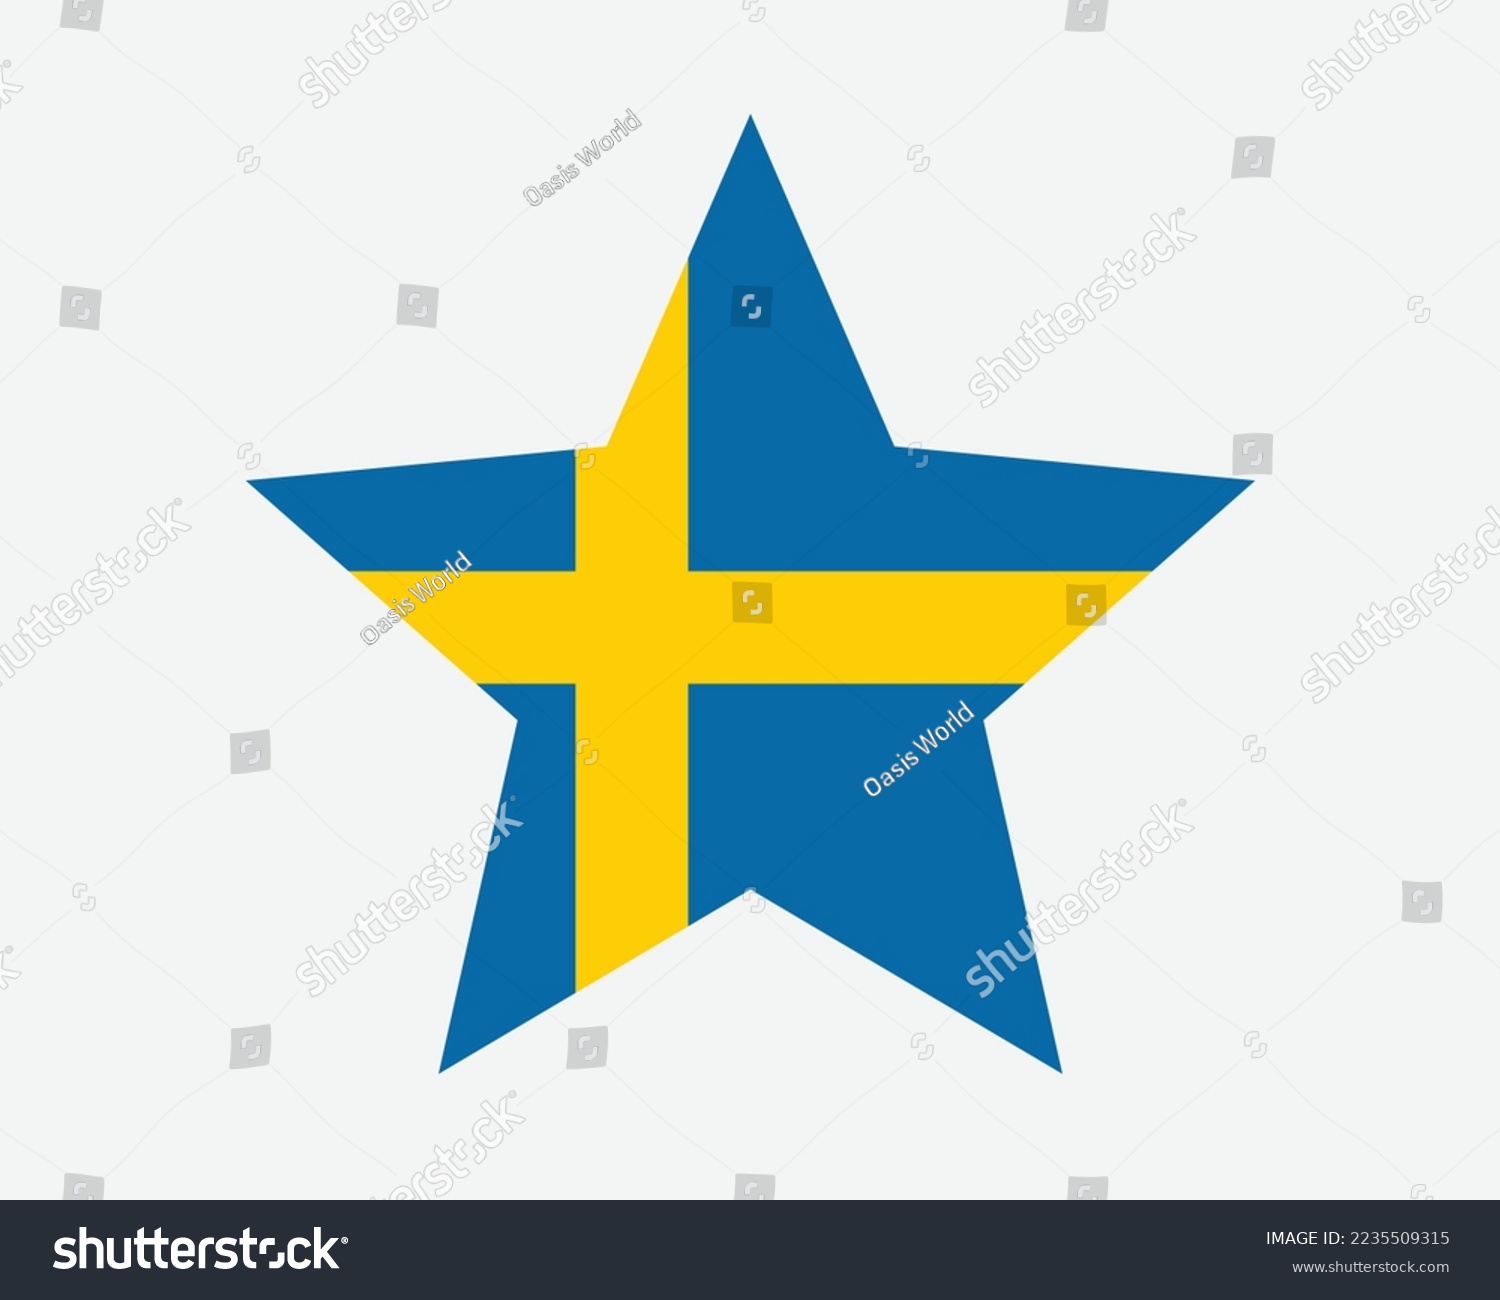 SVG of Sweden Star Flag. Swedish Swede Star Shape Flag. Kingdom of Sweden Country National Banner Icon Symbol Vector Flat Artwork Graphic Illustration svg